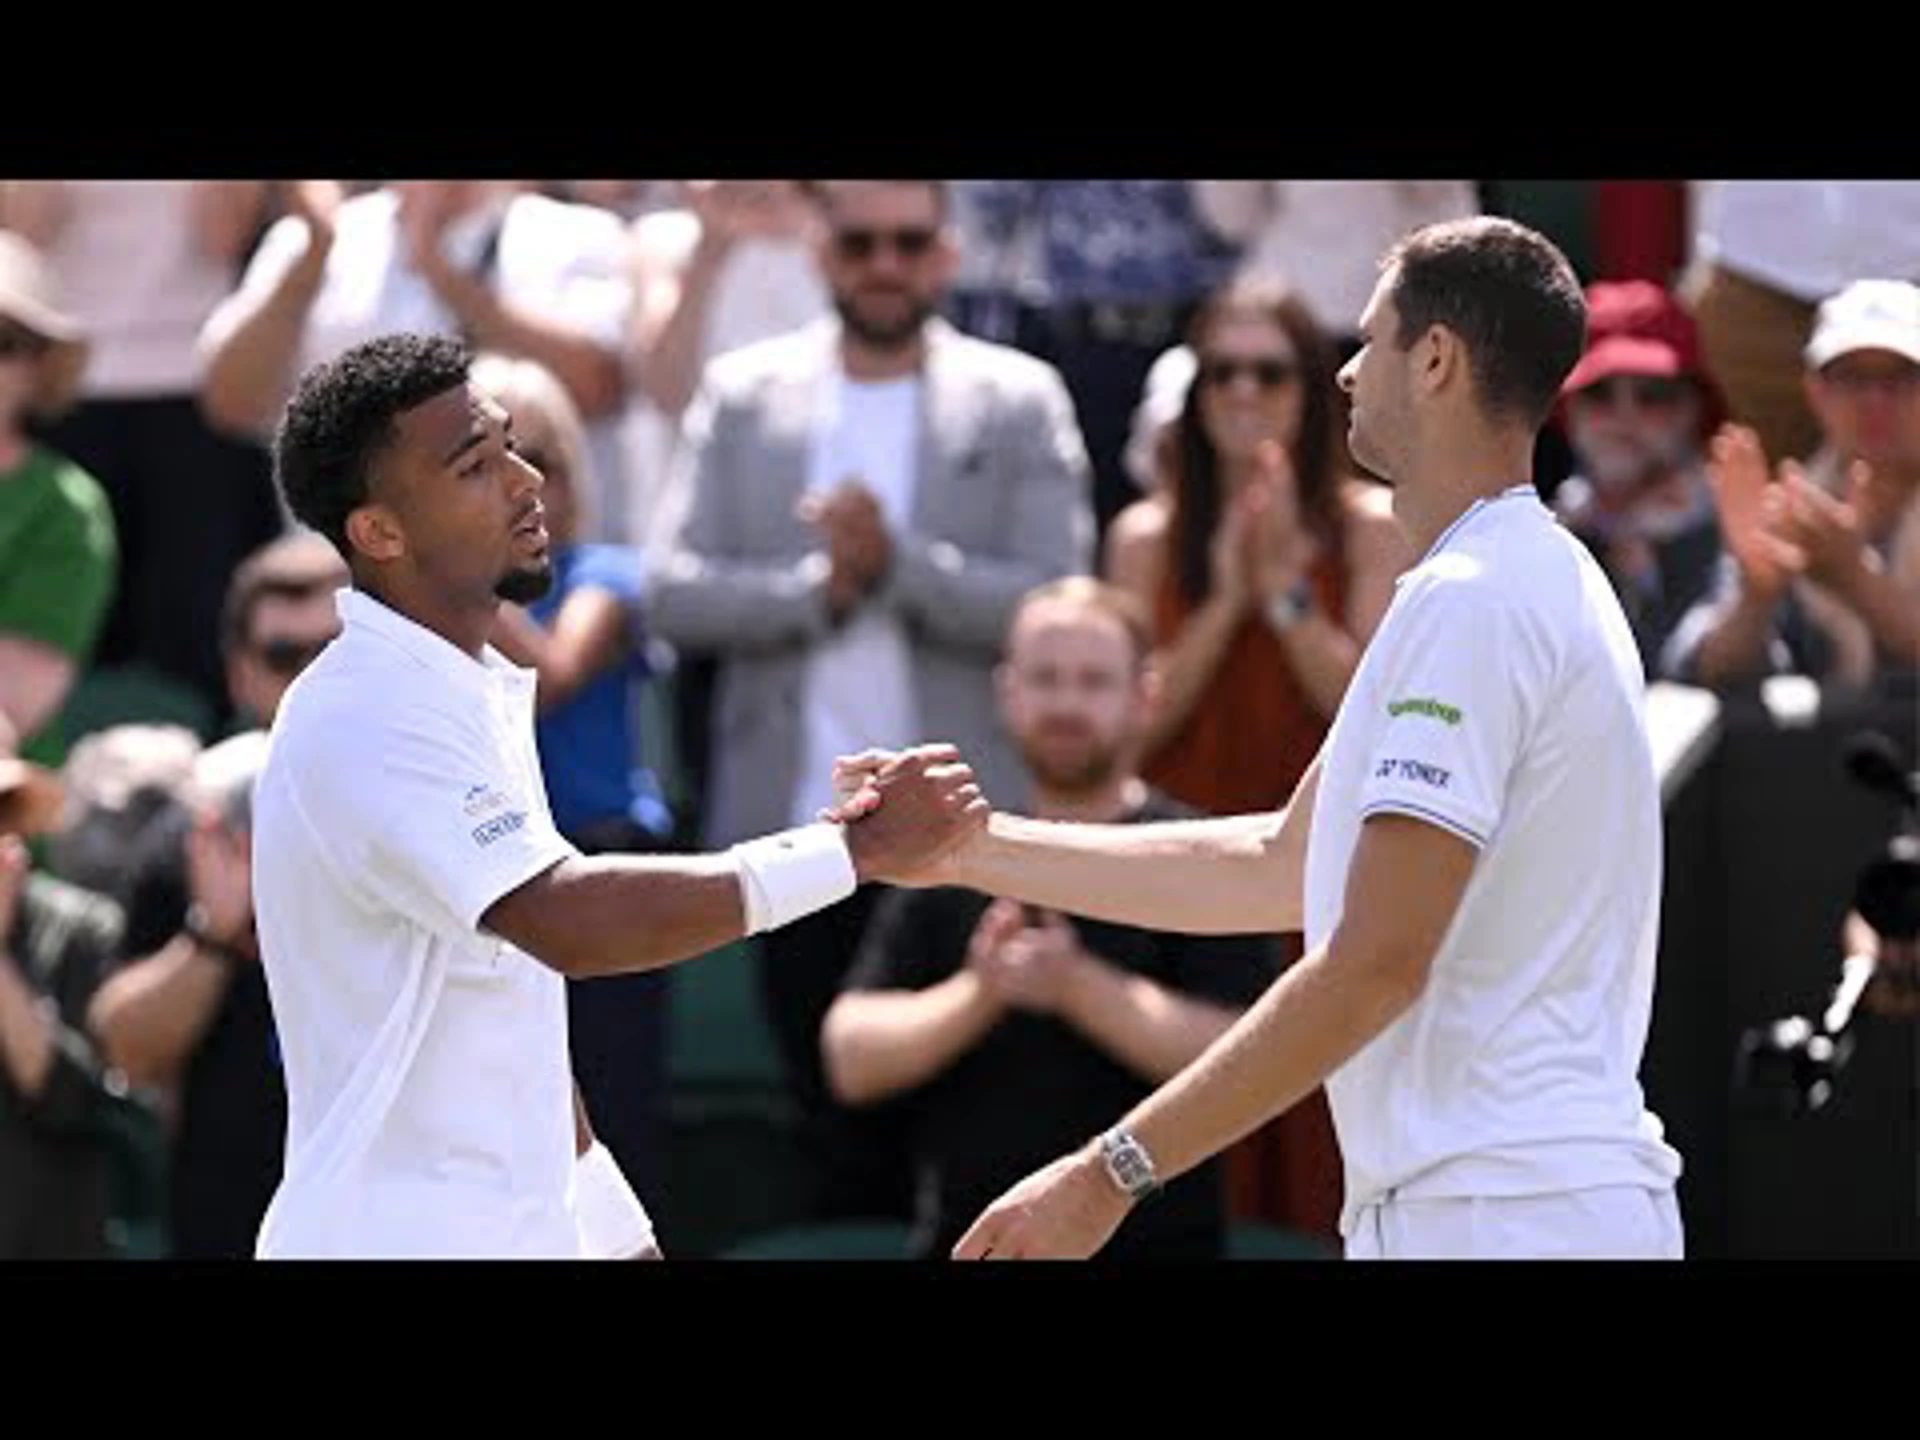 Hubert Hurkacz v Arthur Fils | Men's singles | 2nd Round | Highlights | Wimbledon